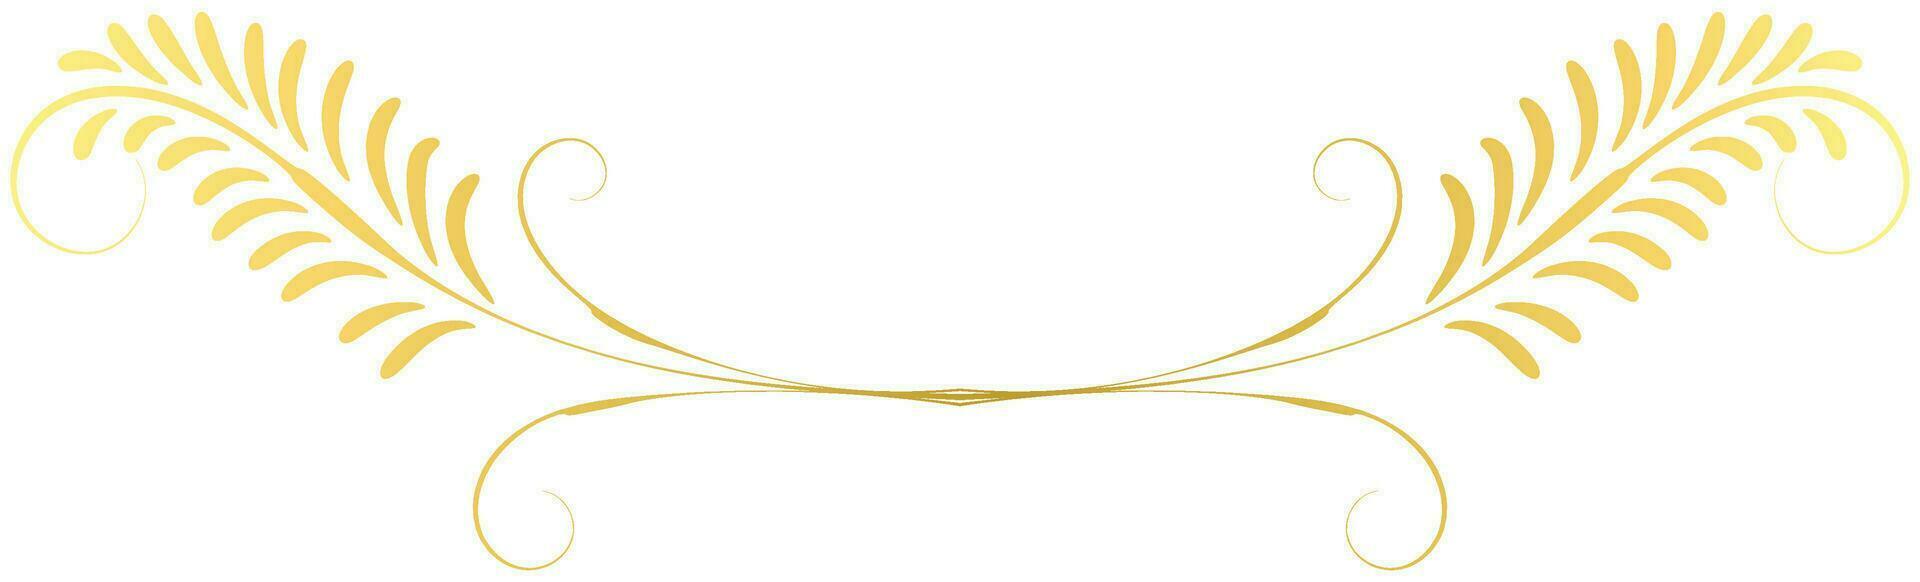 wijnoogst lijnen decoratief s gouden bloem grens verzameling vector